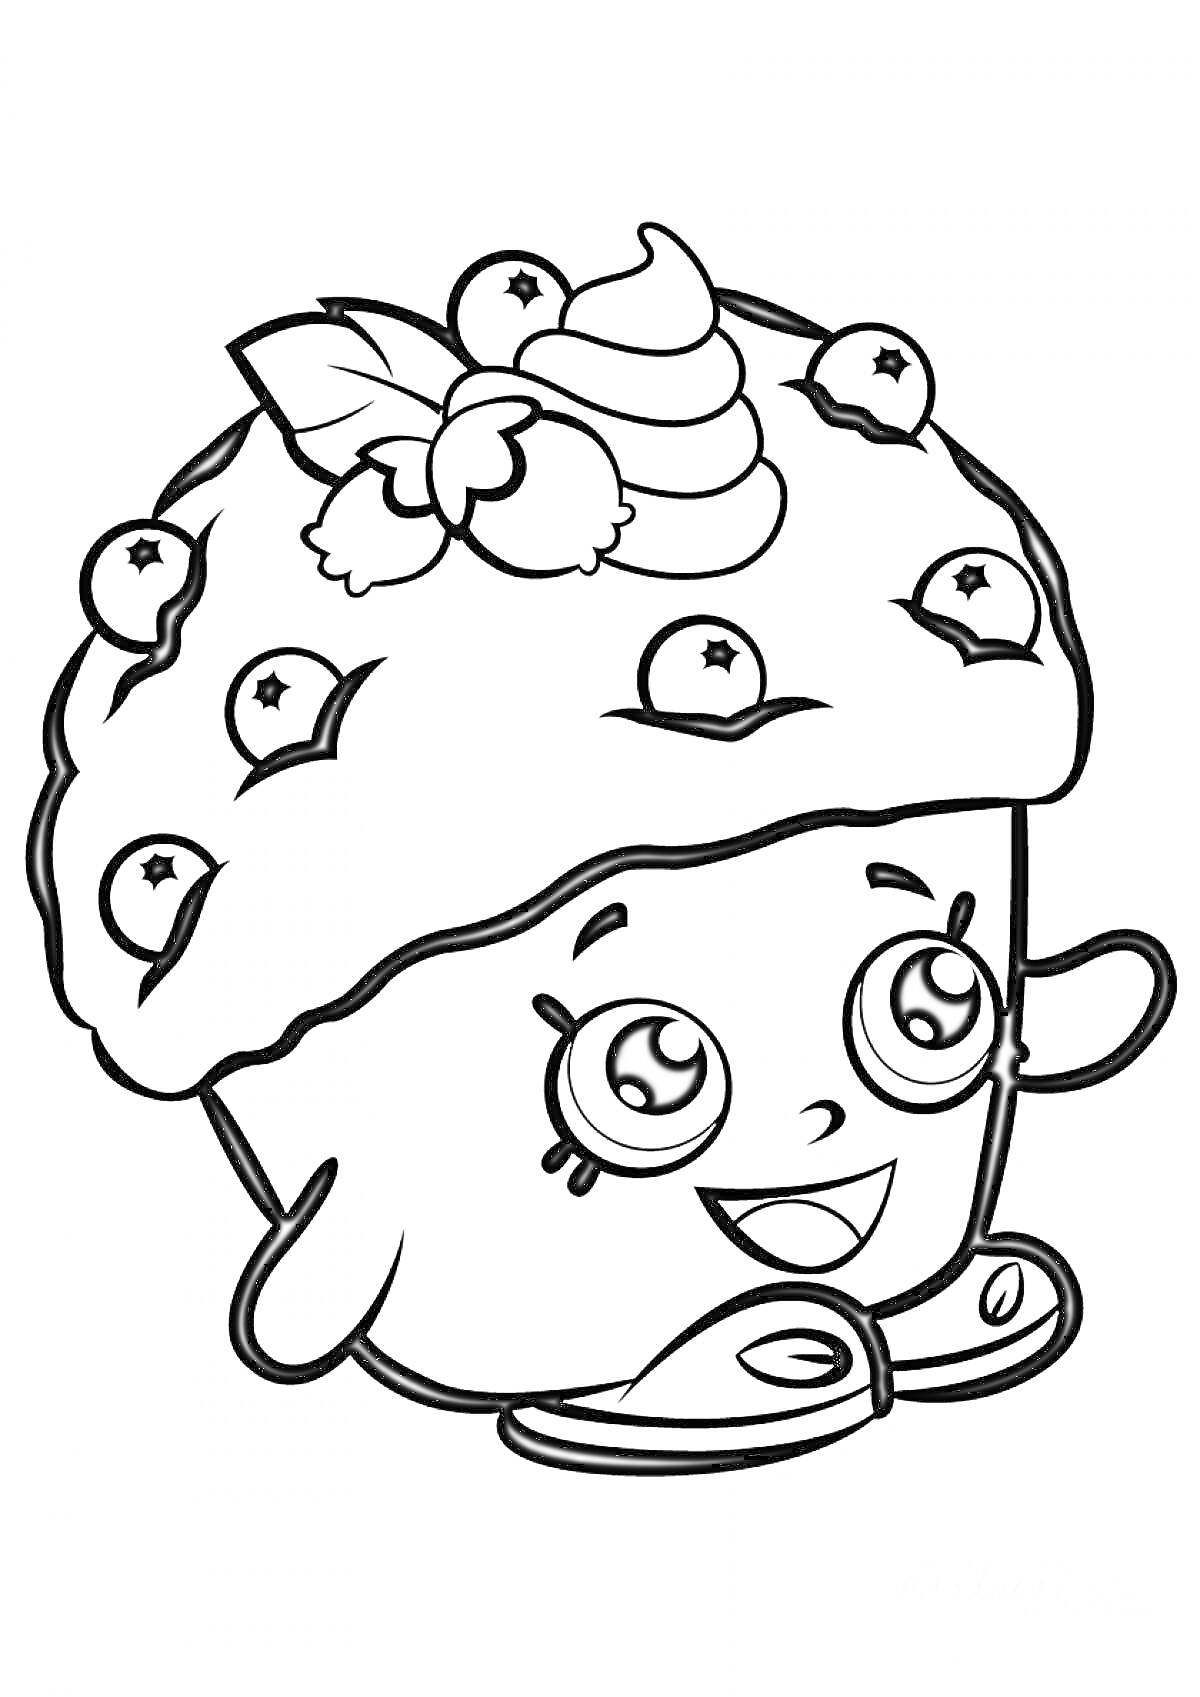 Раскраска Кекс с ягодами и листьями, улыбающийся с большими глазами и тапочками